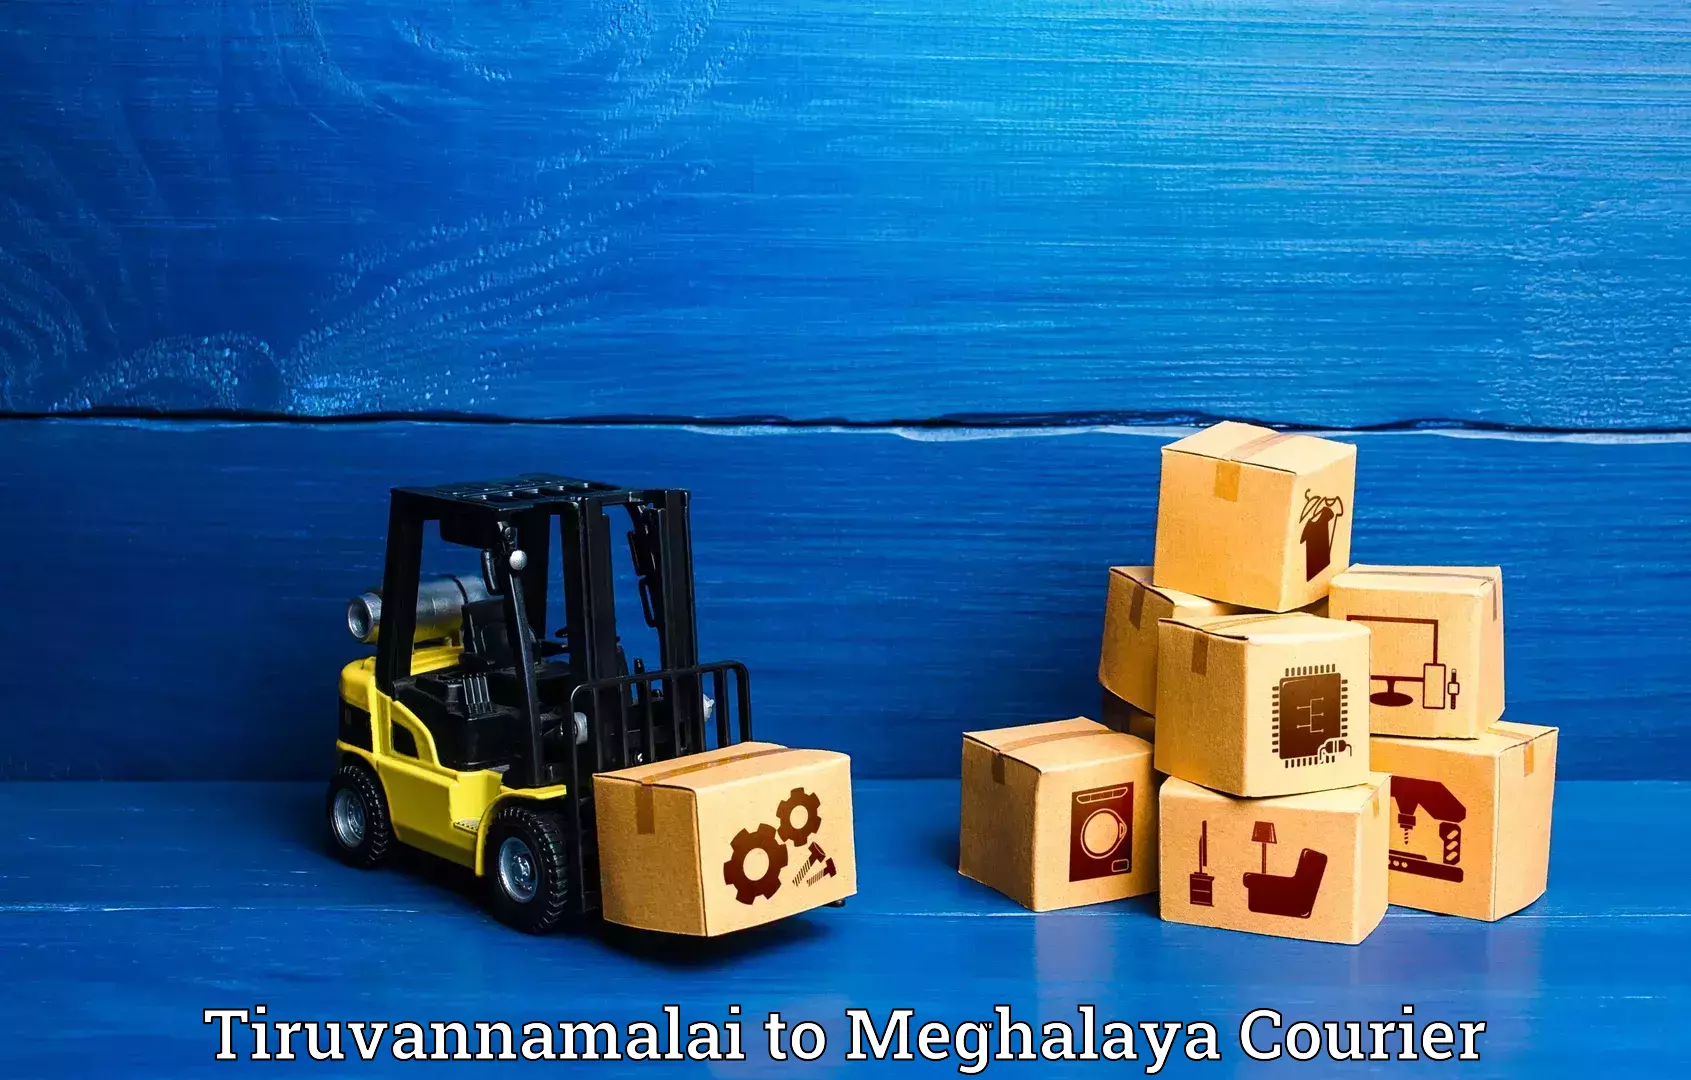 Luggage transport company Tiruvannamalai to Meghalaya